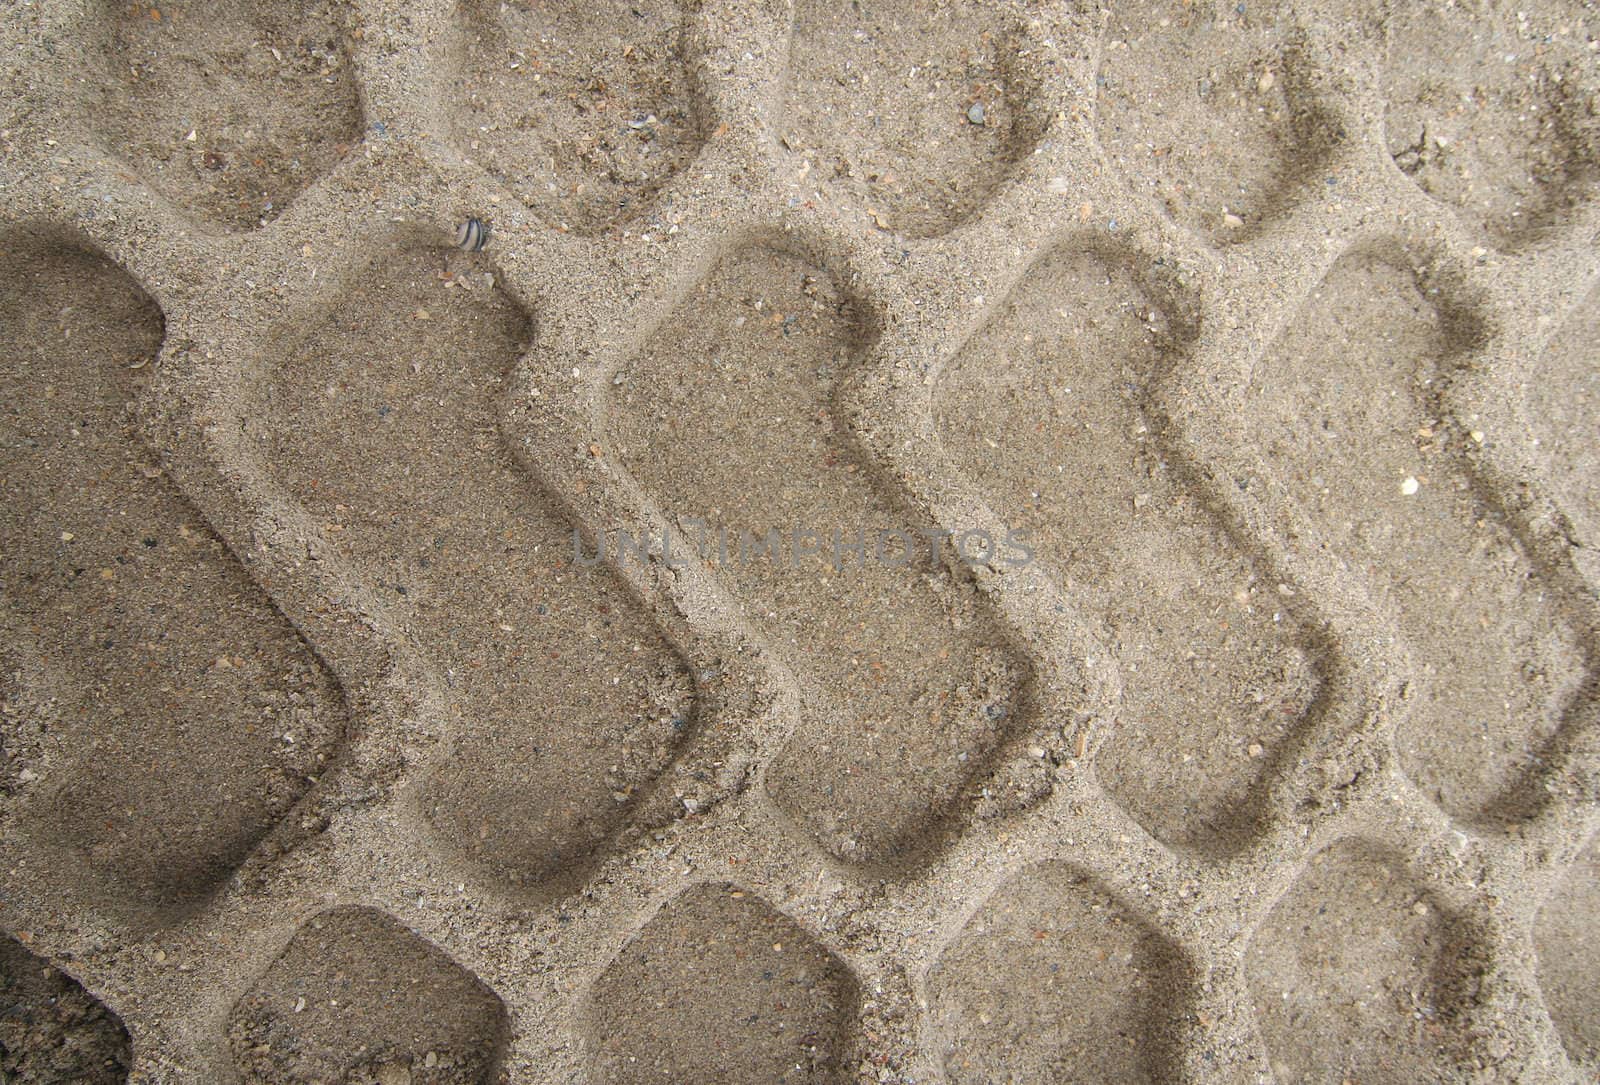 Bulldozer tracks in the sand